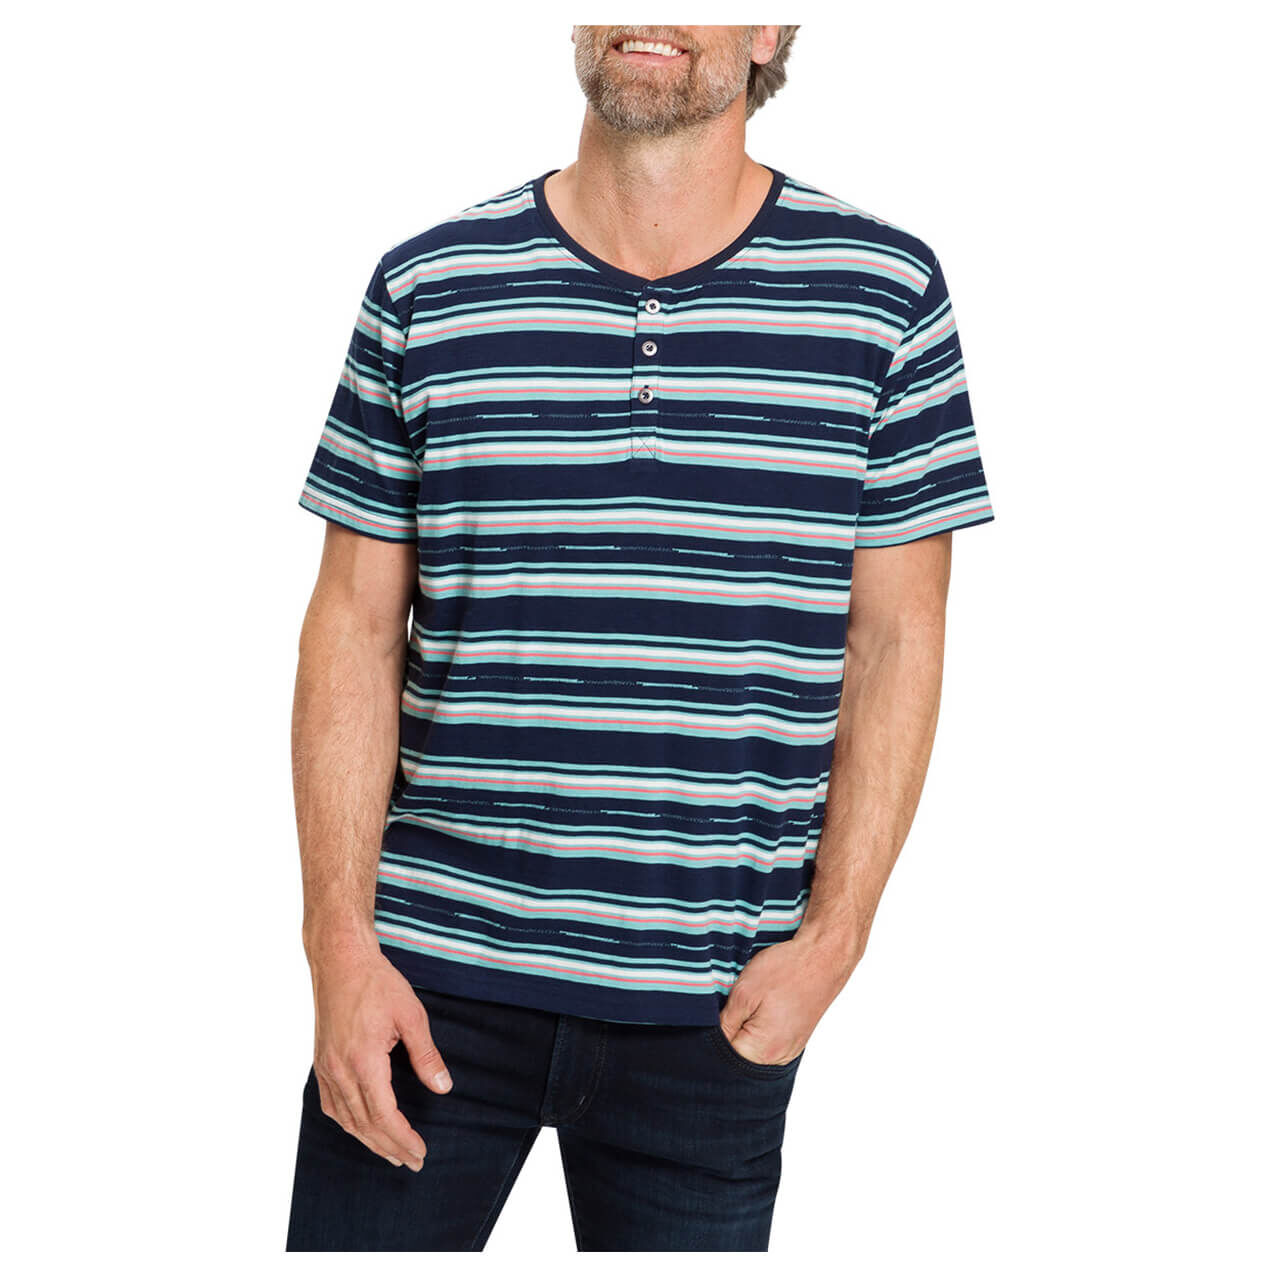 Pioneer Serafino T-Shirt für Herren in Blau gestreift, FarbNr.: 6701